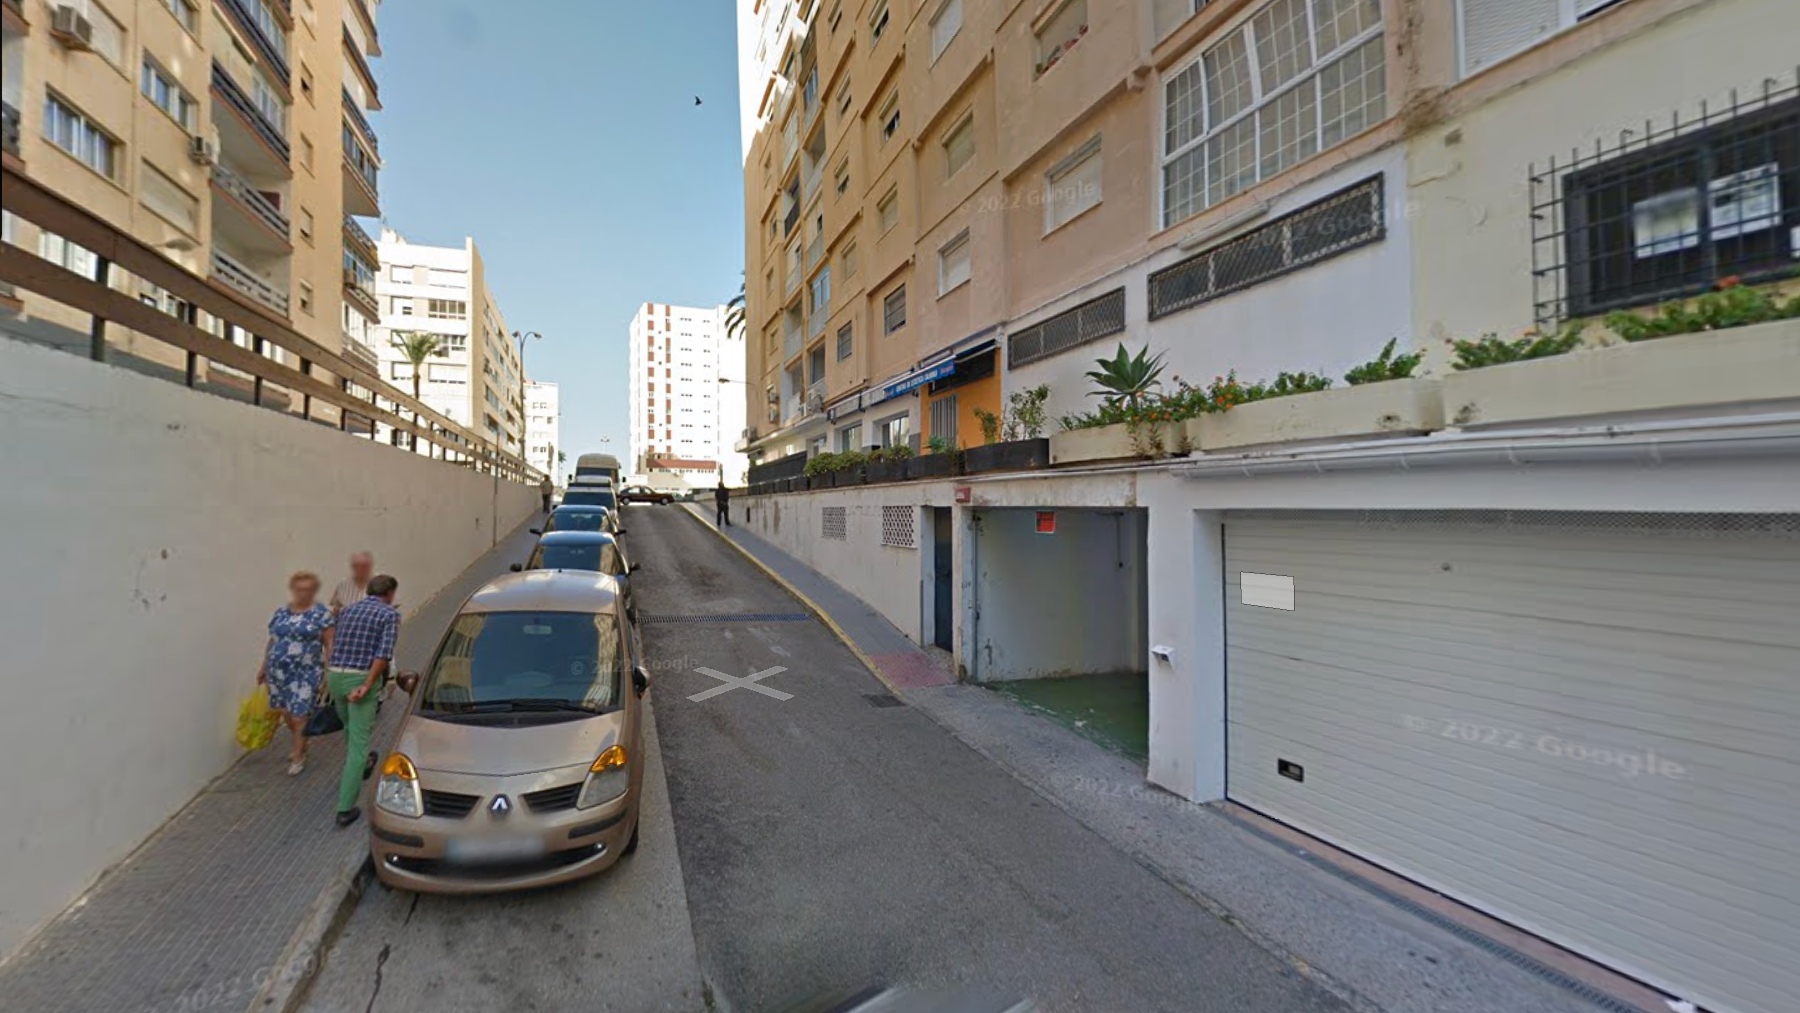 Garajes en la calle Pintor Godoy de Cádiz, donde han ocurrido los hechos.